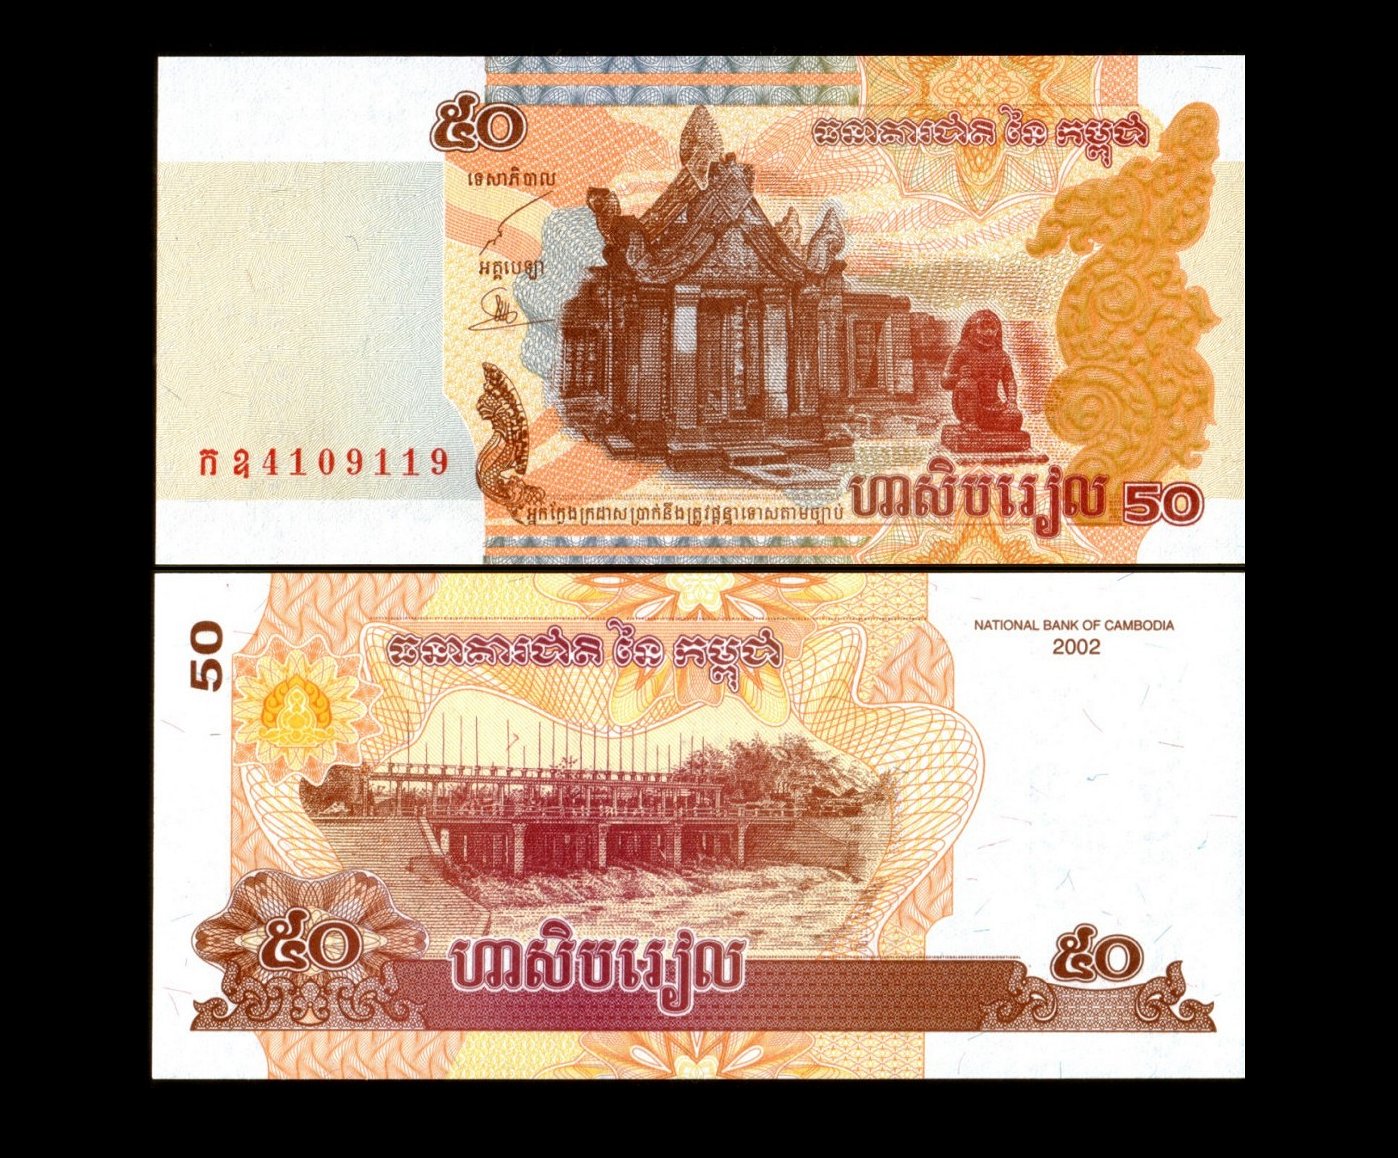 Cambodgia 2002 - 50 riels UNC